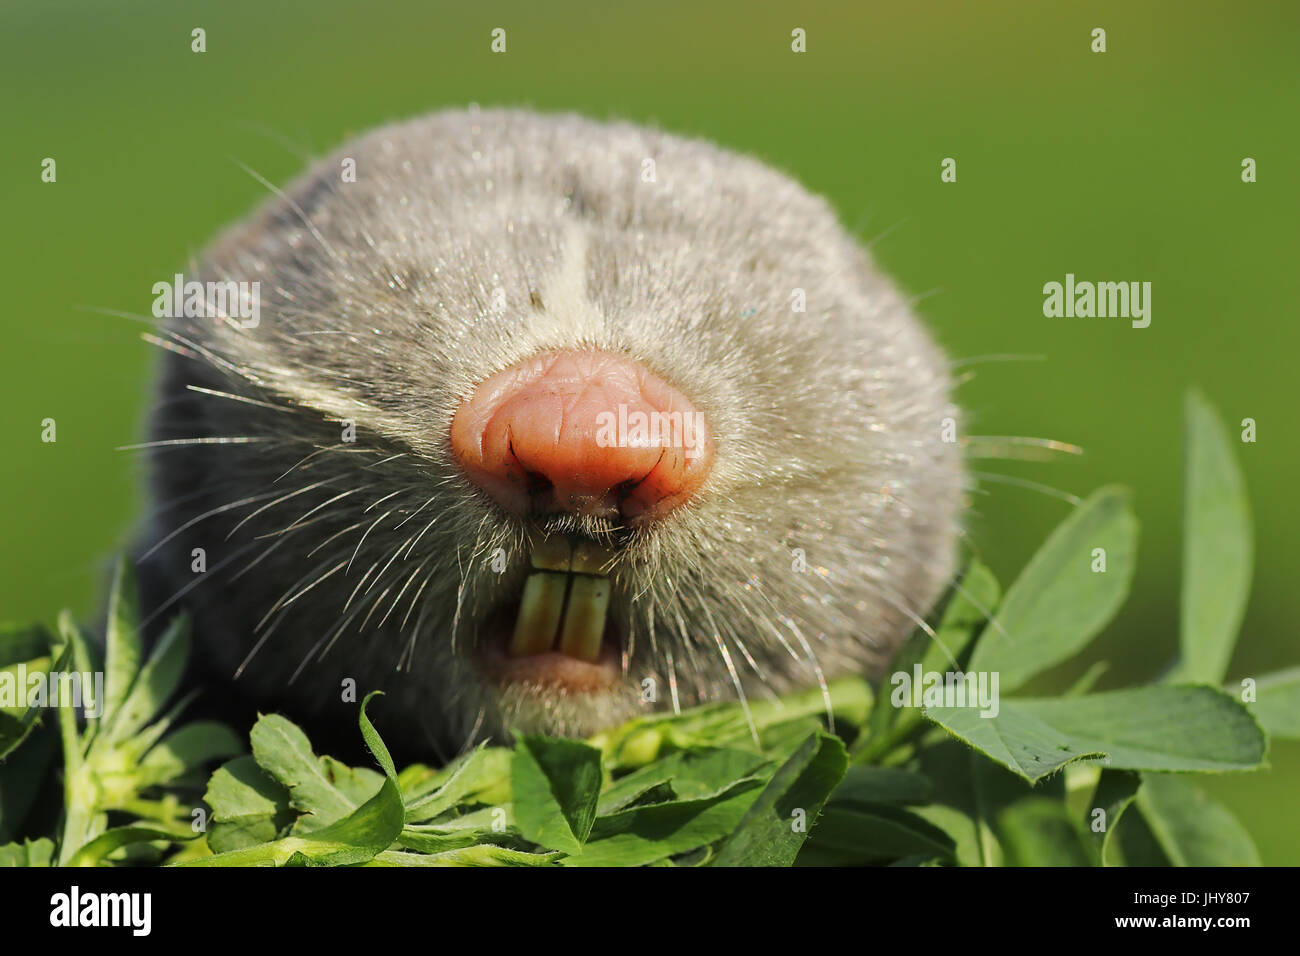 Ritratto di minor mole rat ( Spalax leucodon ) Foto Stock